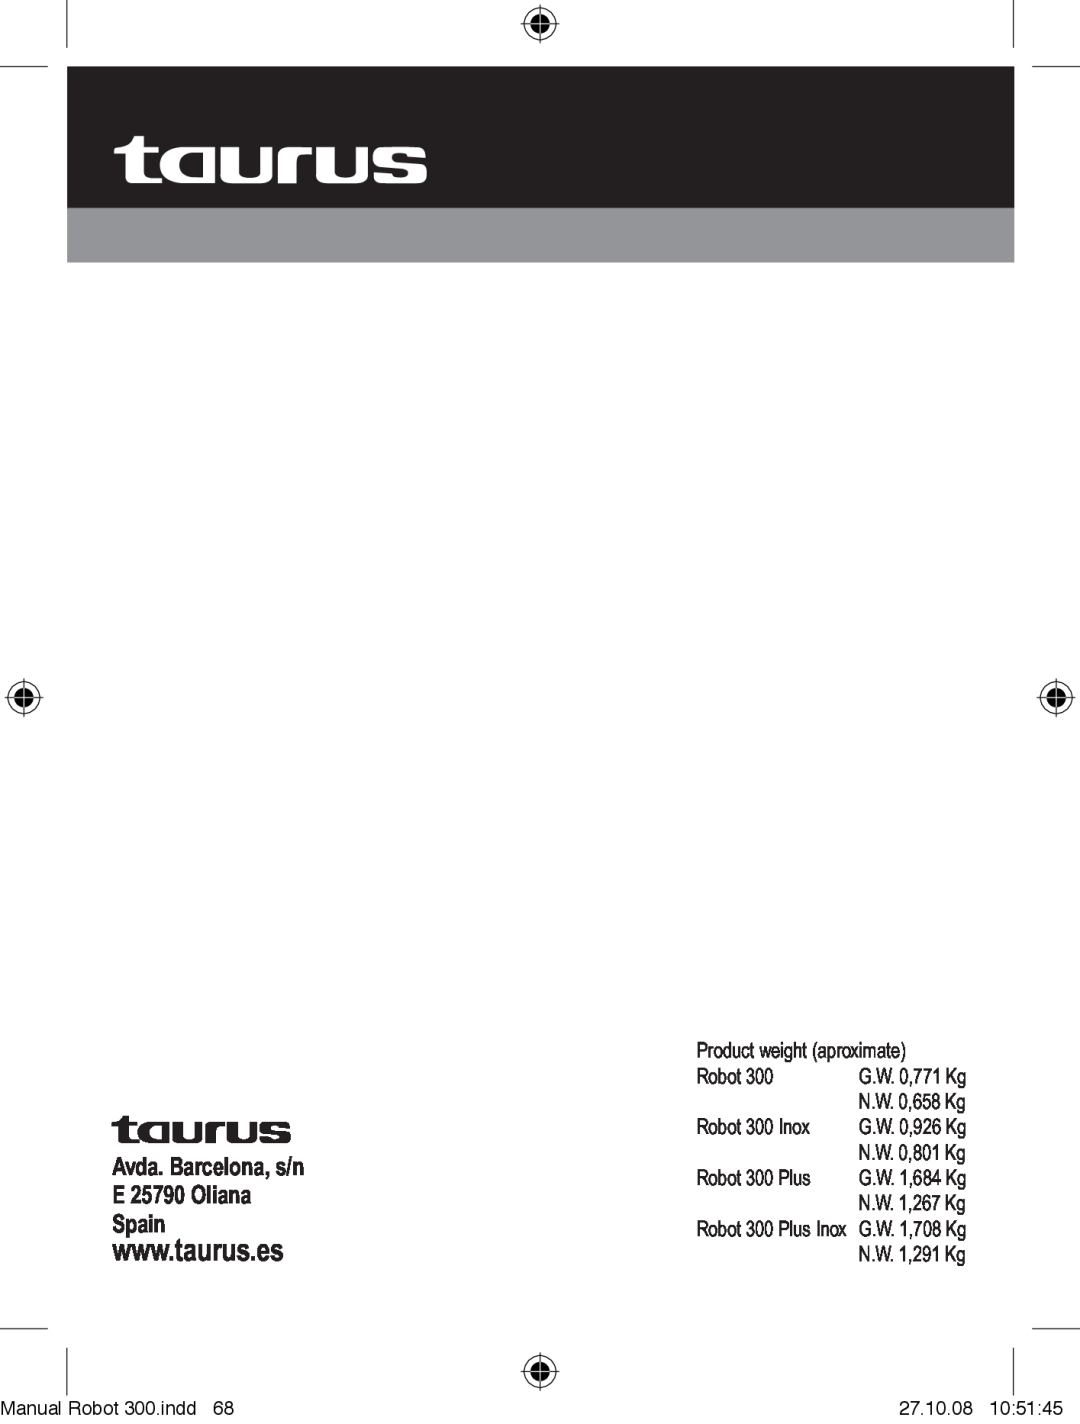 Taurus Group Robot 300 Plus Manual, Robot 300.indd, 27.10.08, G.W. 0,771 Kg, N.W. 0,658 Kg, G.W. 0,926 Kg, N.W. 0,801 Kg 